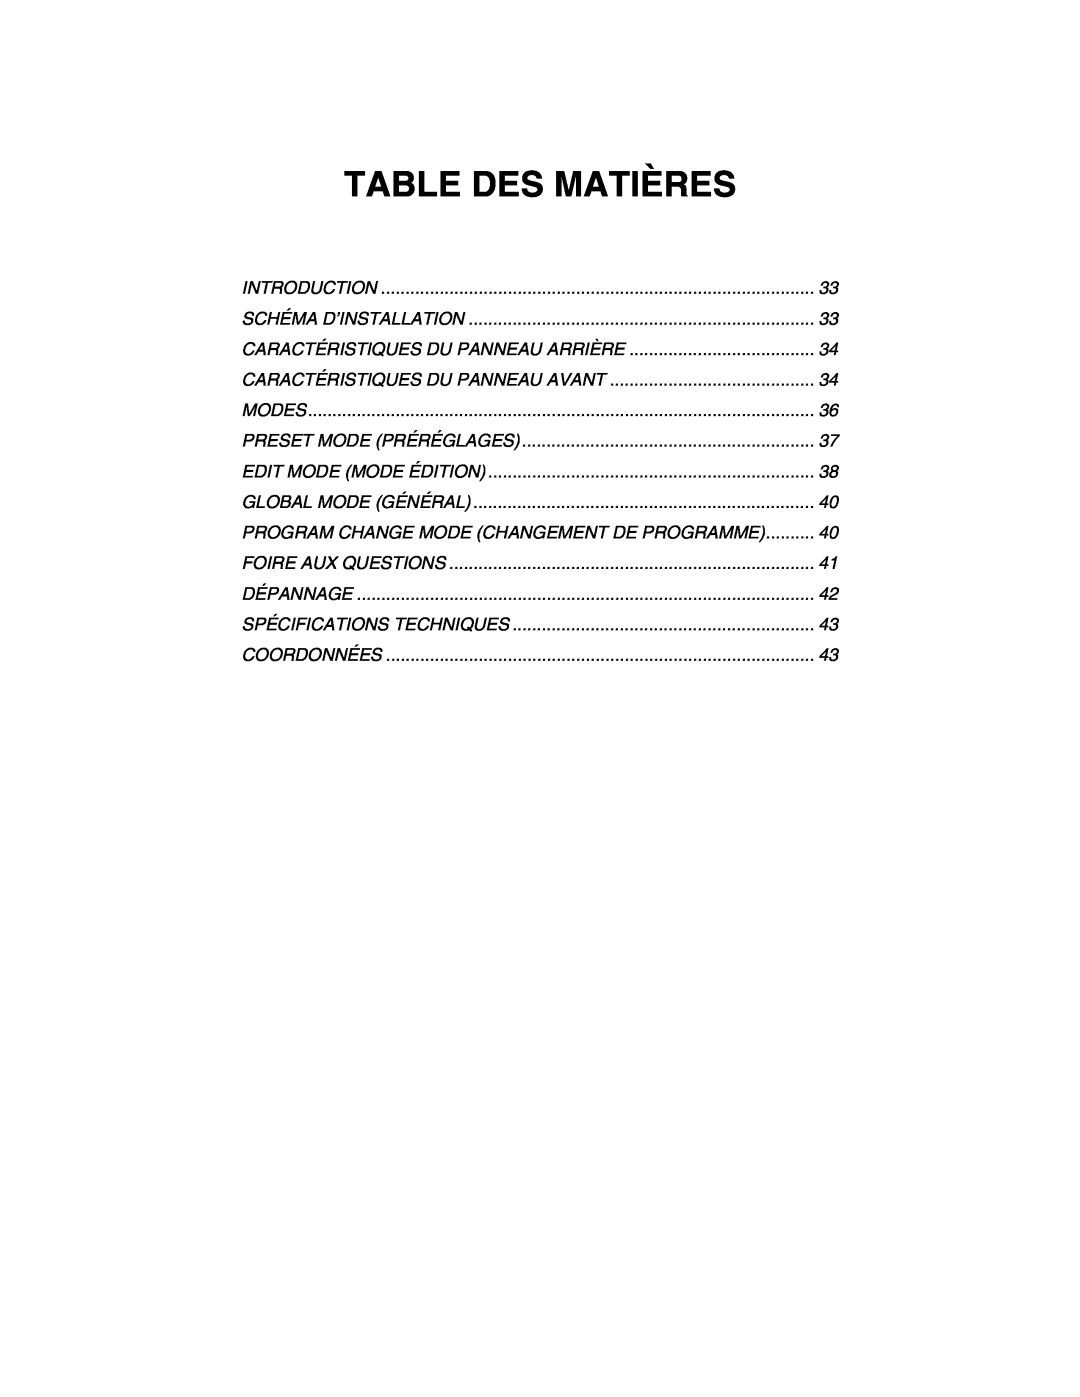 Akai MPK49 quick start manual Table Des Matières, Program Change Mode Changement De Programme 